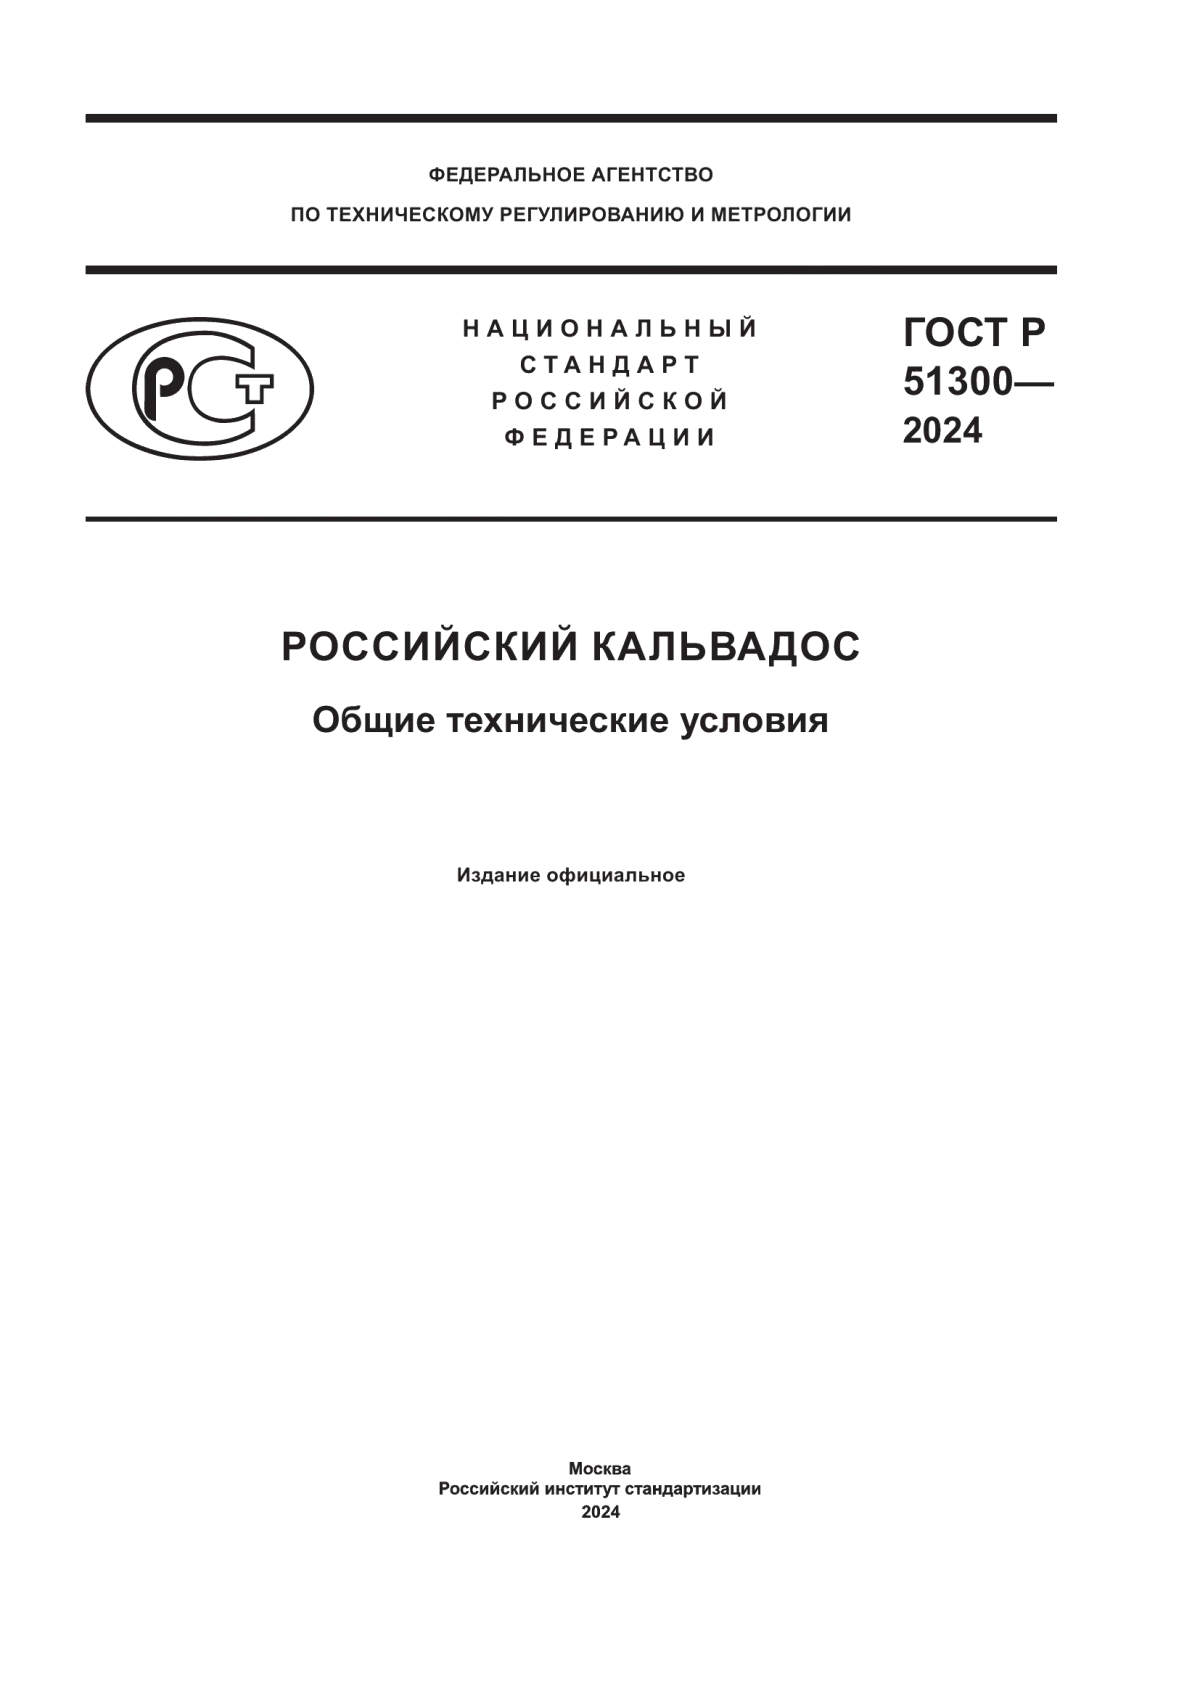 ГОСТ Р 51300-2024 Российский кальвадос. Общие технические условия